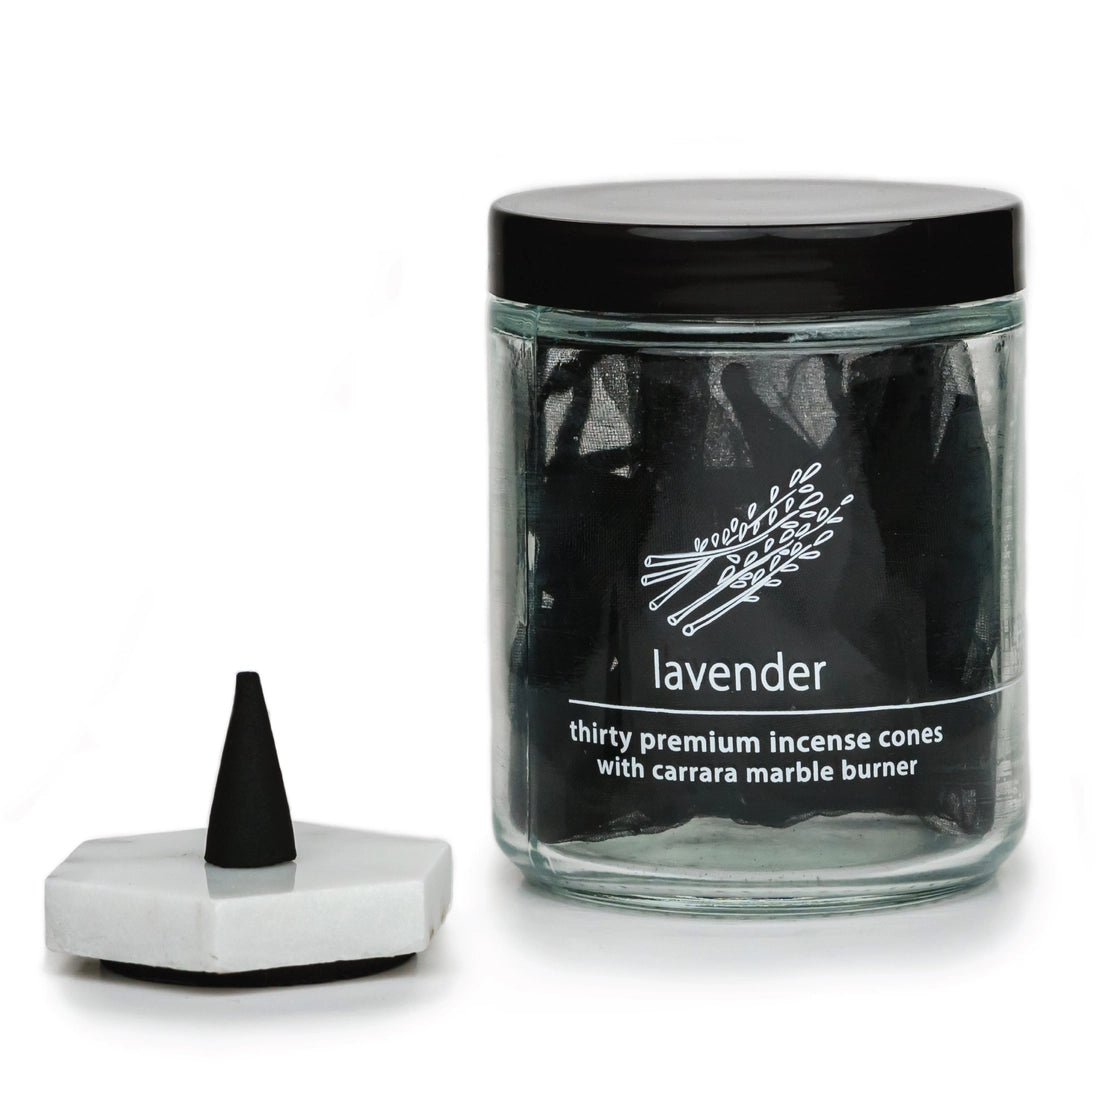 Incense Cones & Marble Burner - Lavender